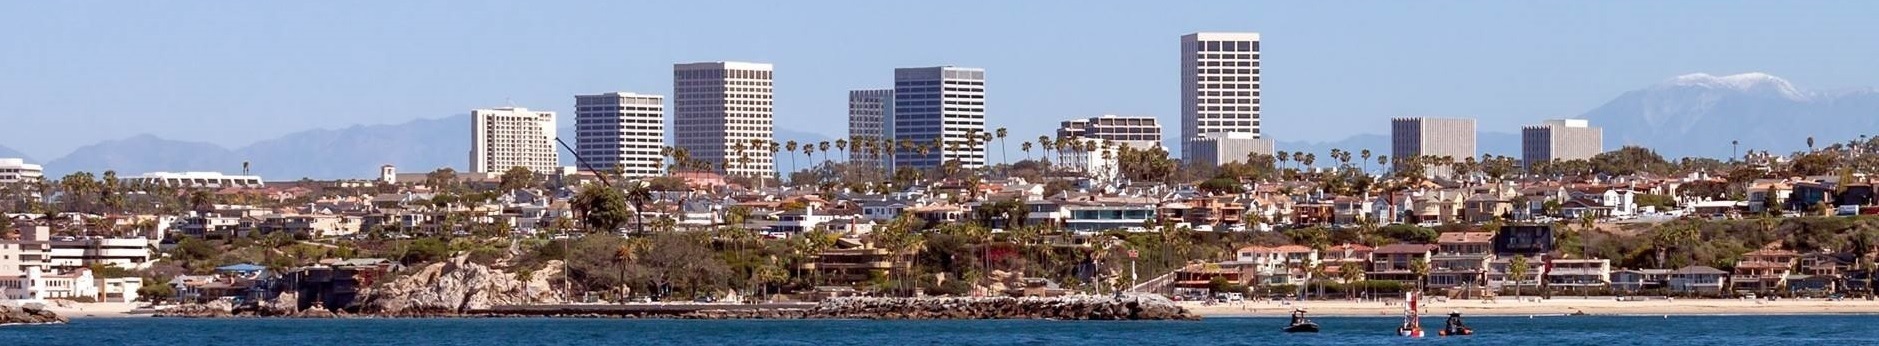 Panoramic View of Newport Beach Coastline